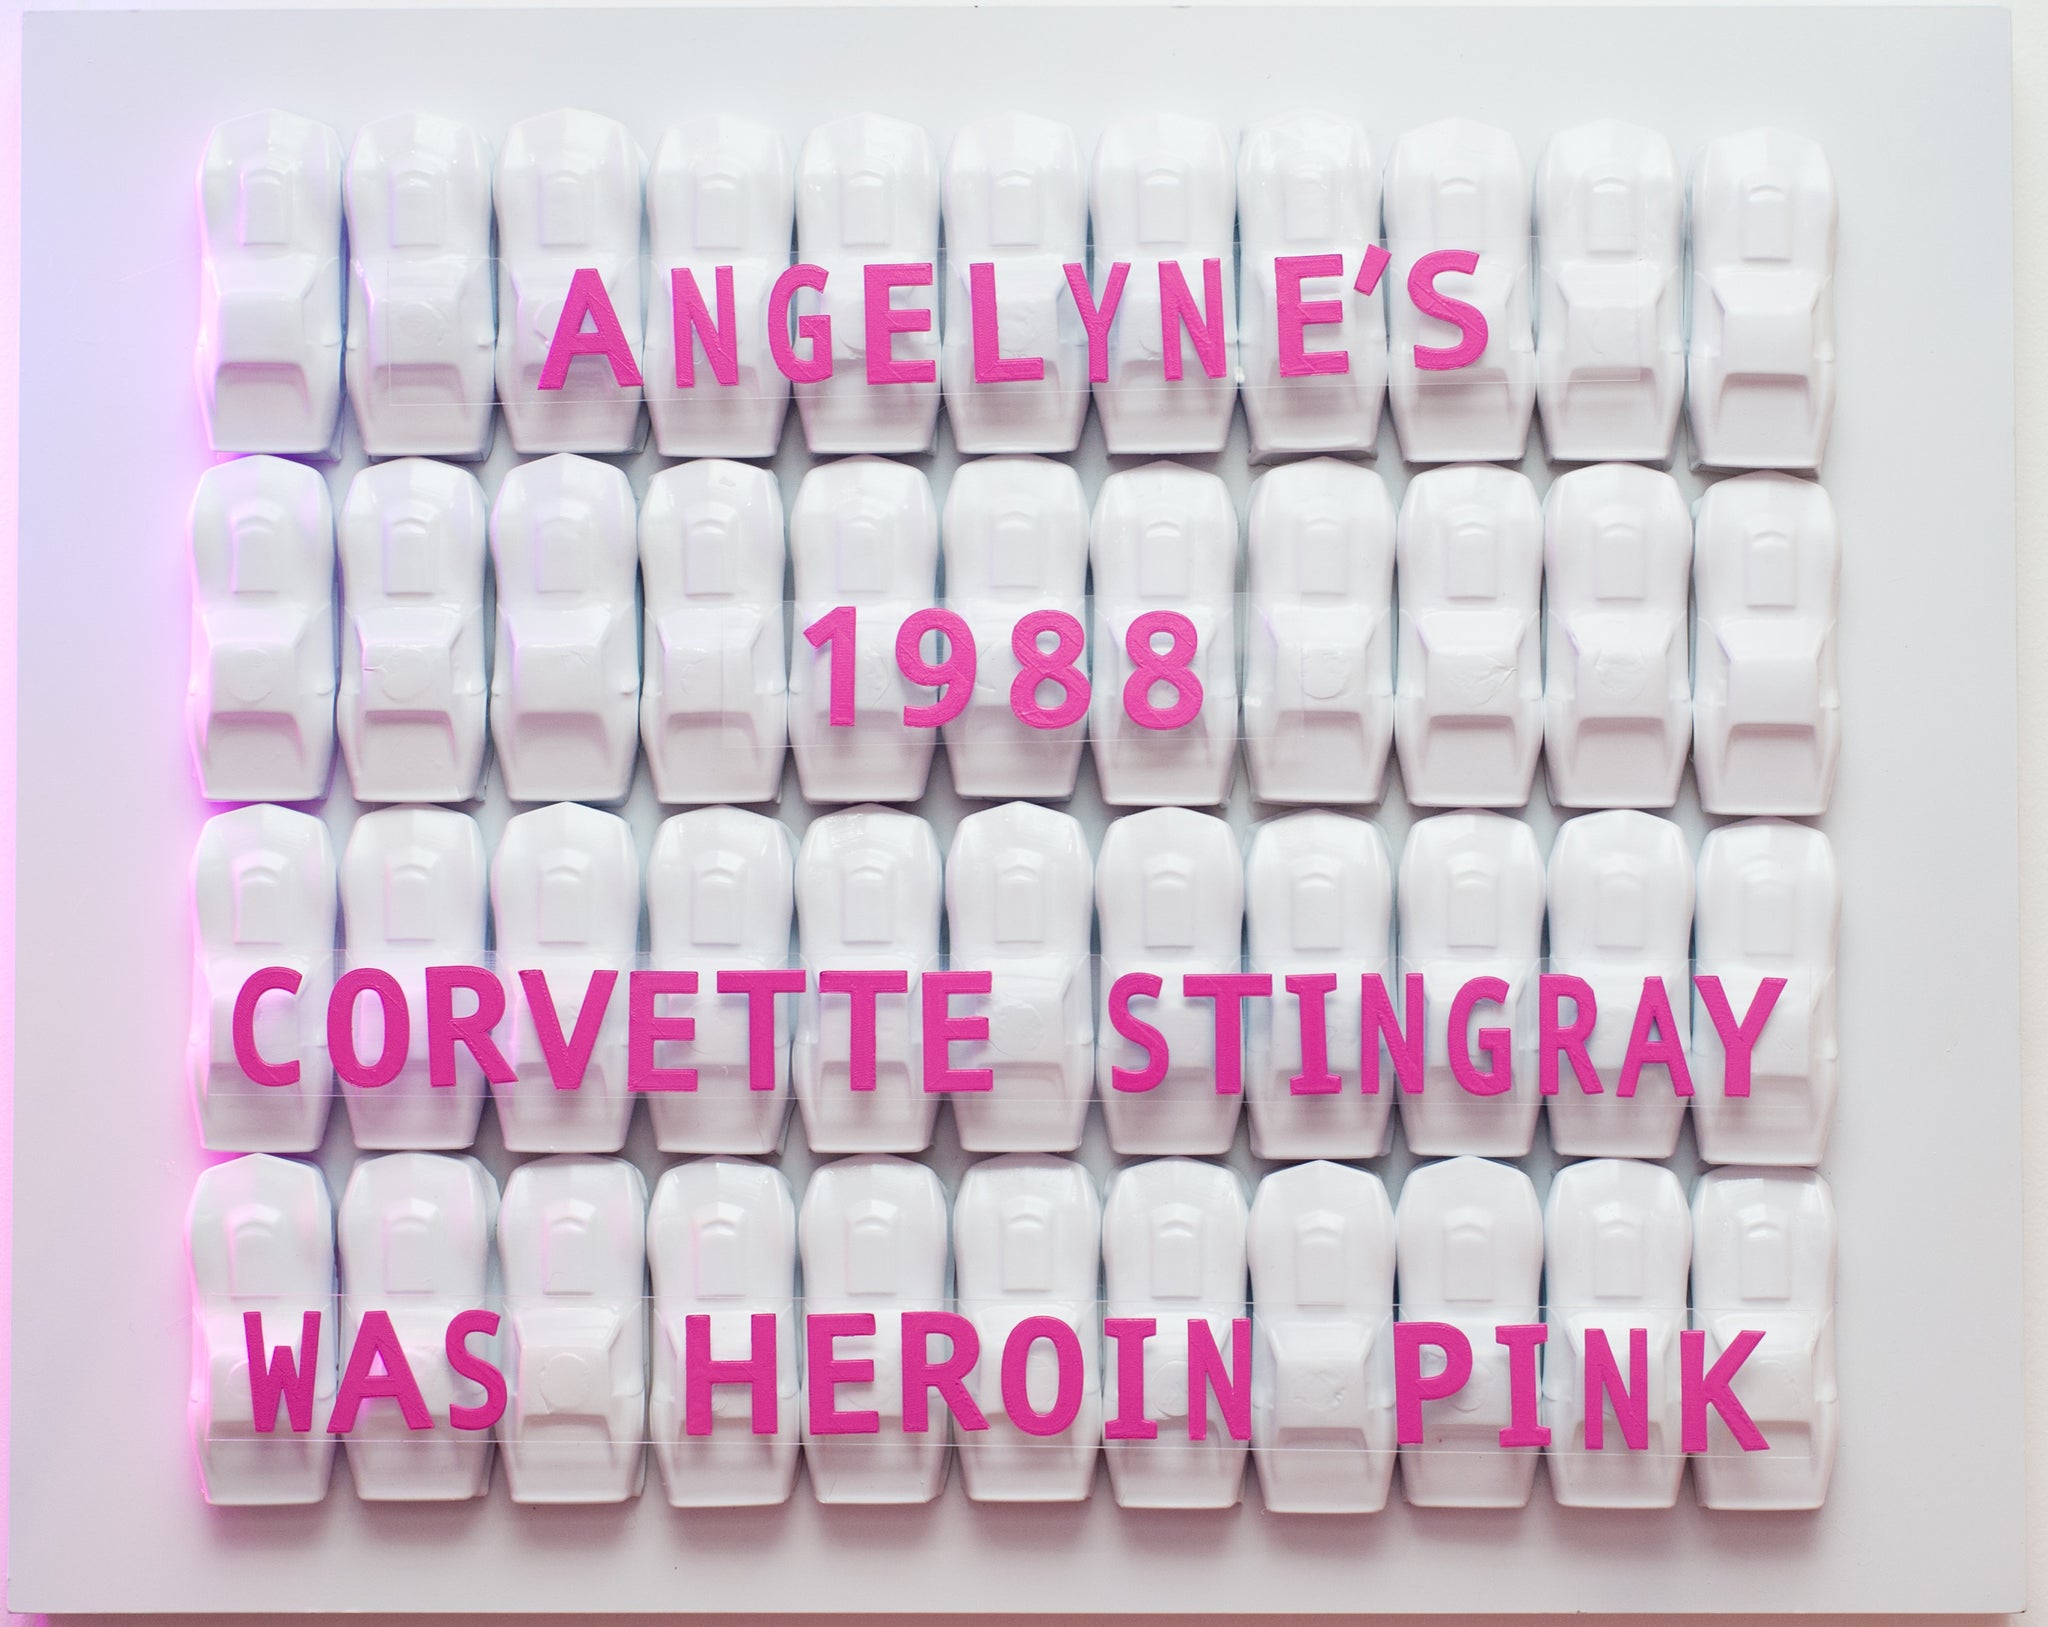 Kelsey Bennett, "Angelyne's Heroin Pink"